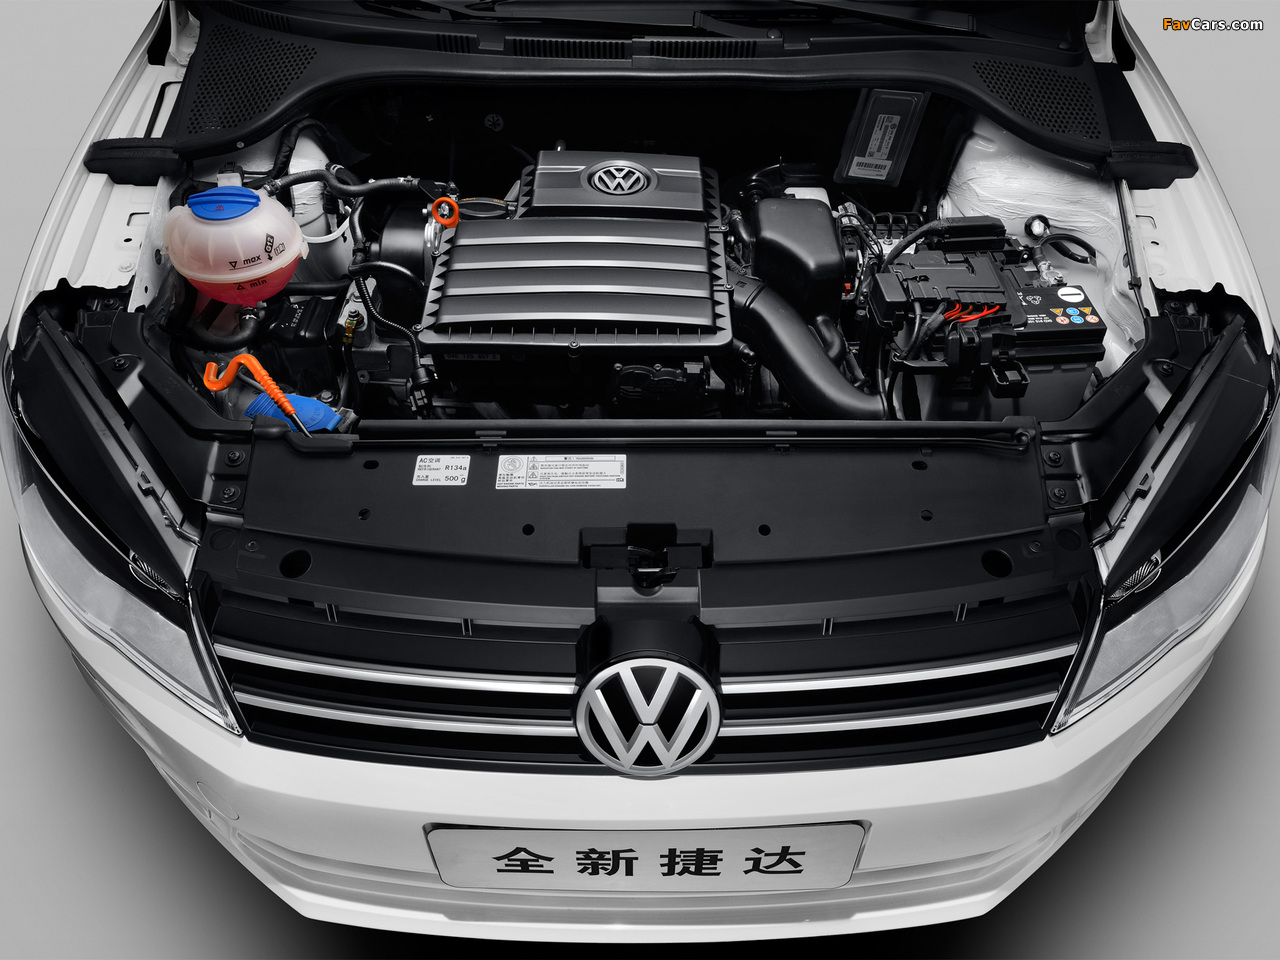 Volkswagen Jetta CN-spec 2013 pictures (1280 x 960)